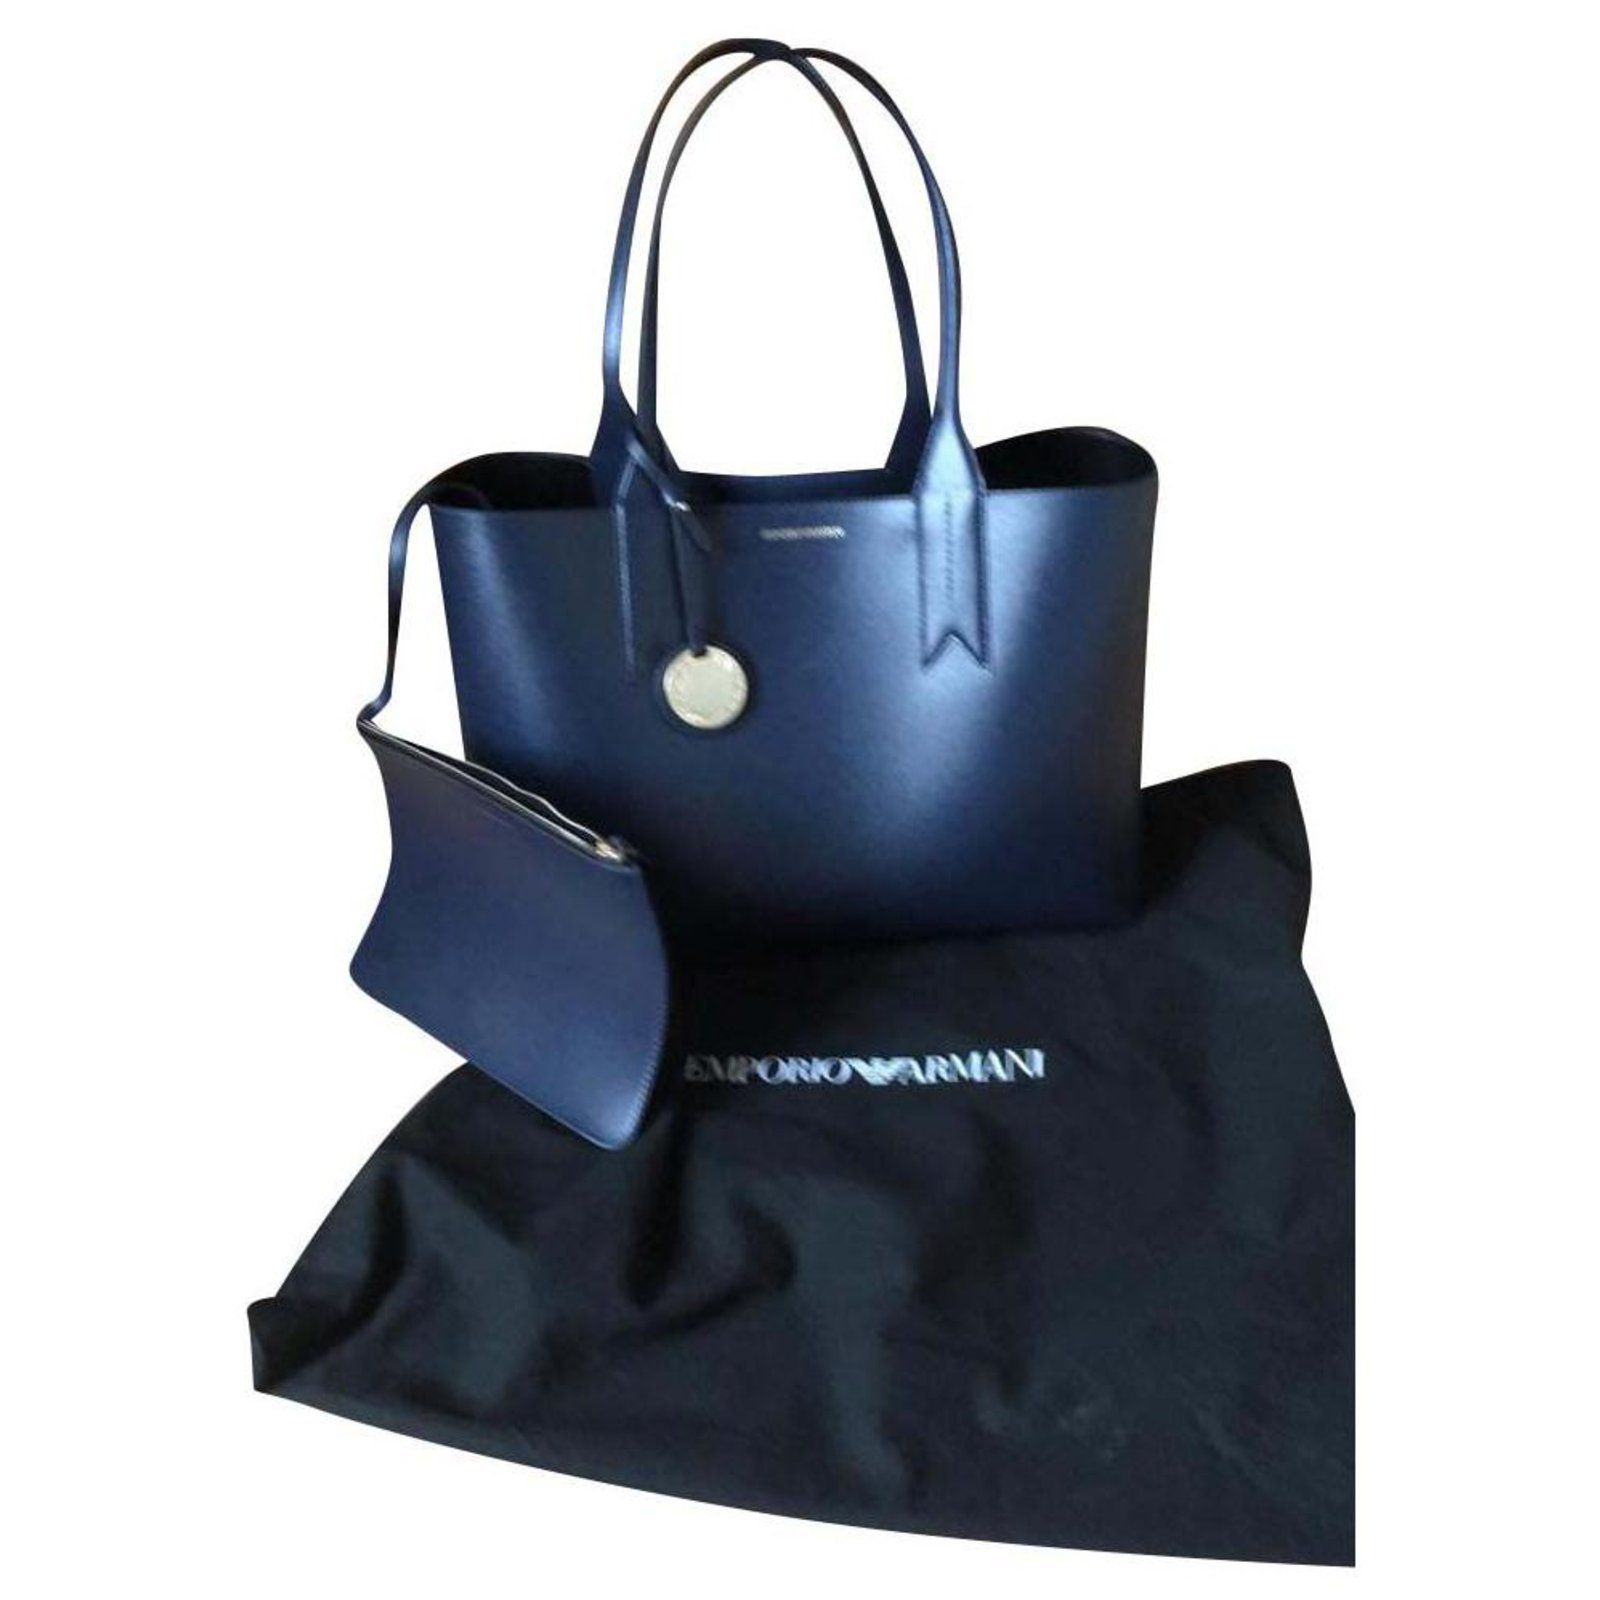 Emporio Armani Synthetic Handbag in Dark Blue Womens Tote bags Emporio Armani Tote bags Blue 